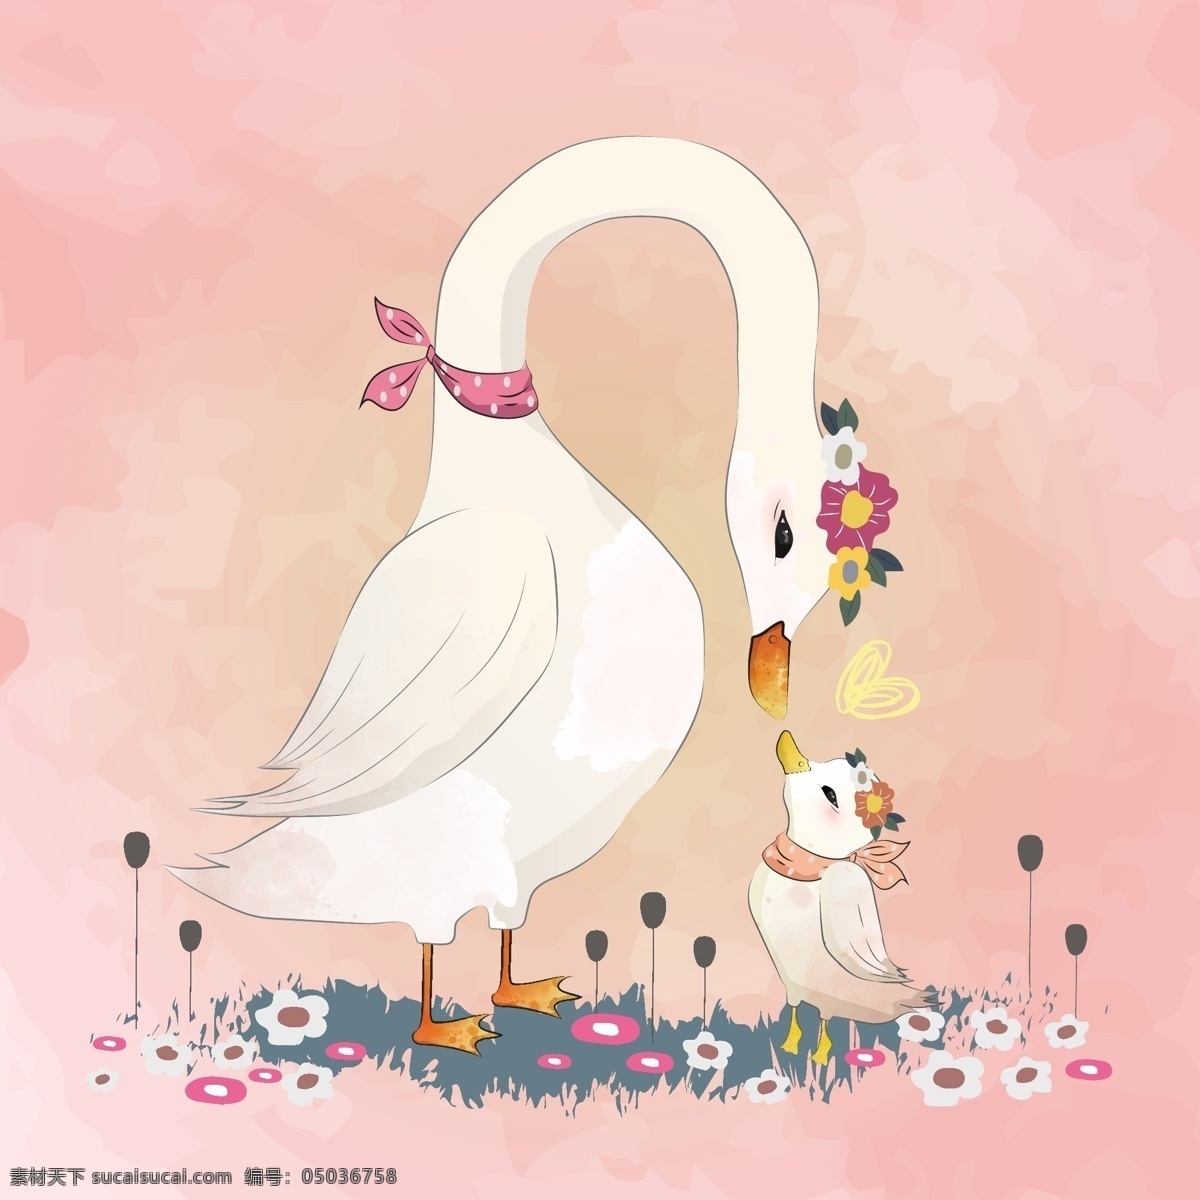 有爱的鹅插画 有爱 鹅 插画 鹅妈妈 小鹅 动物 生物世界 家禽家畜